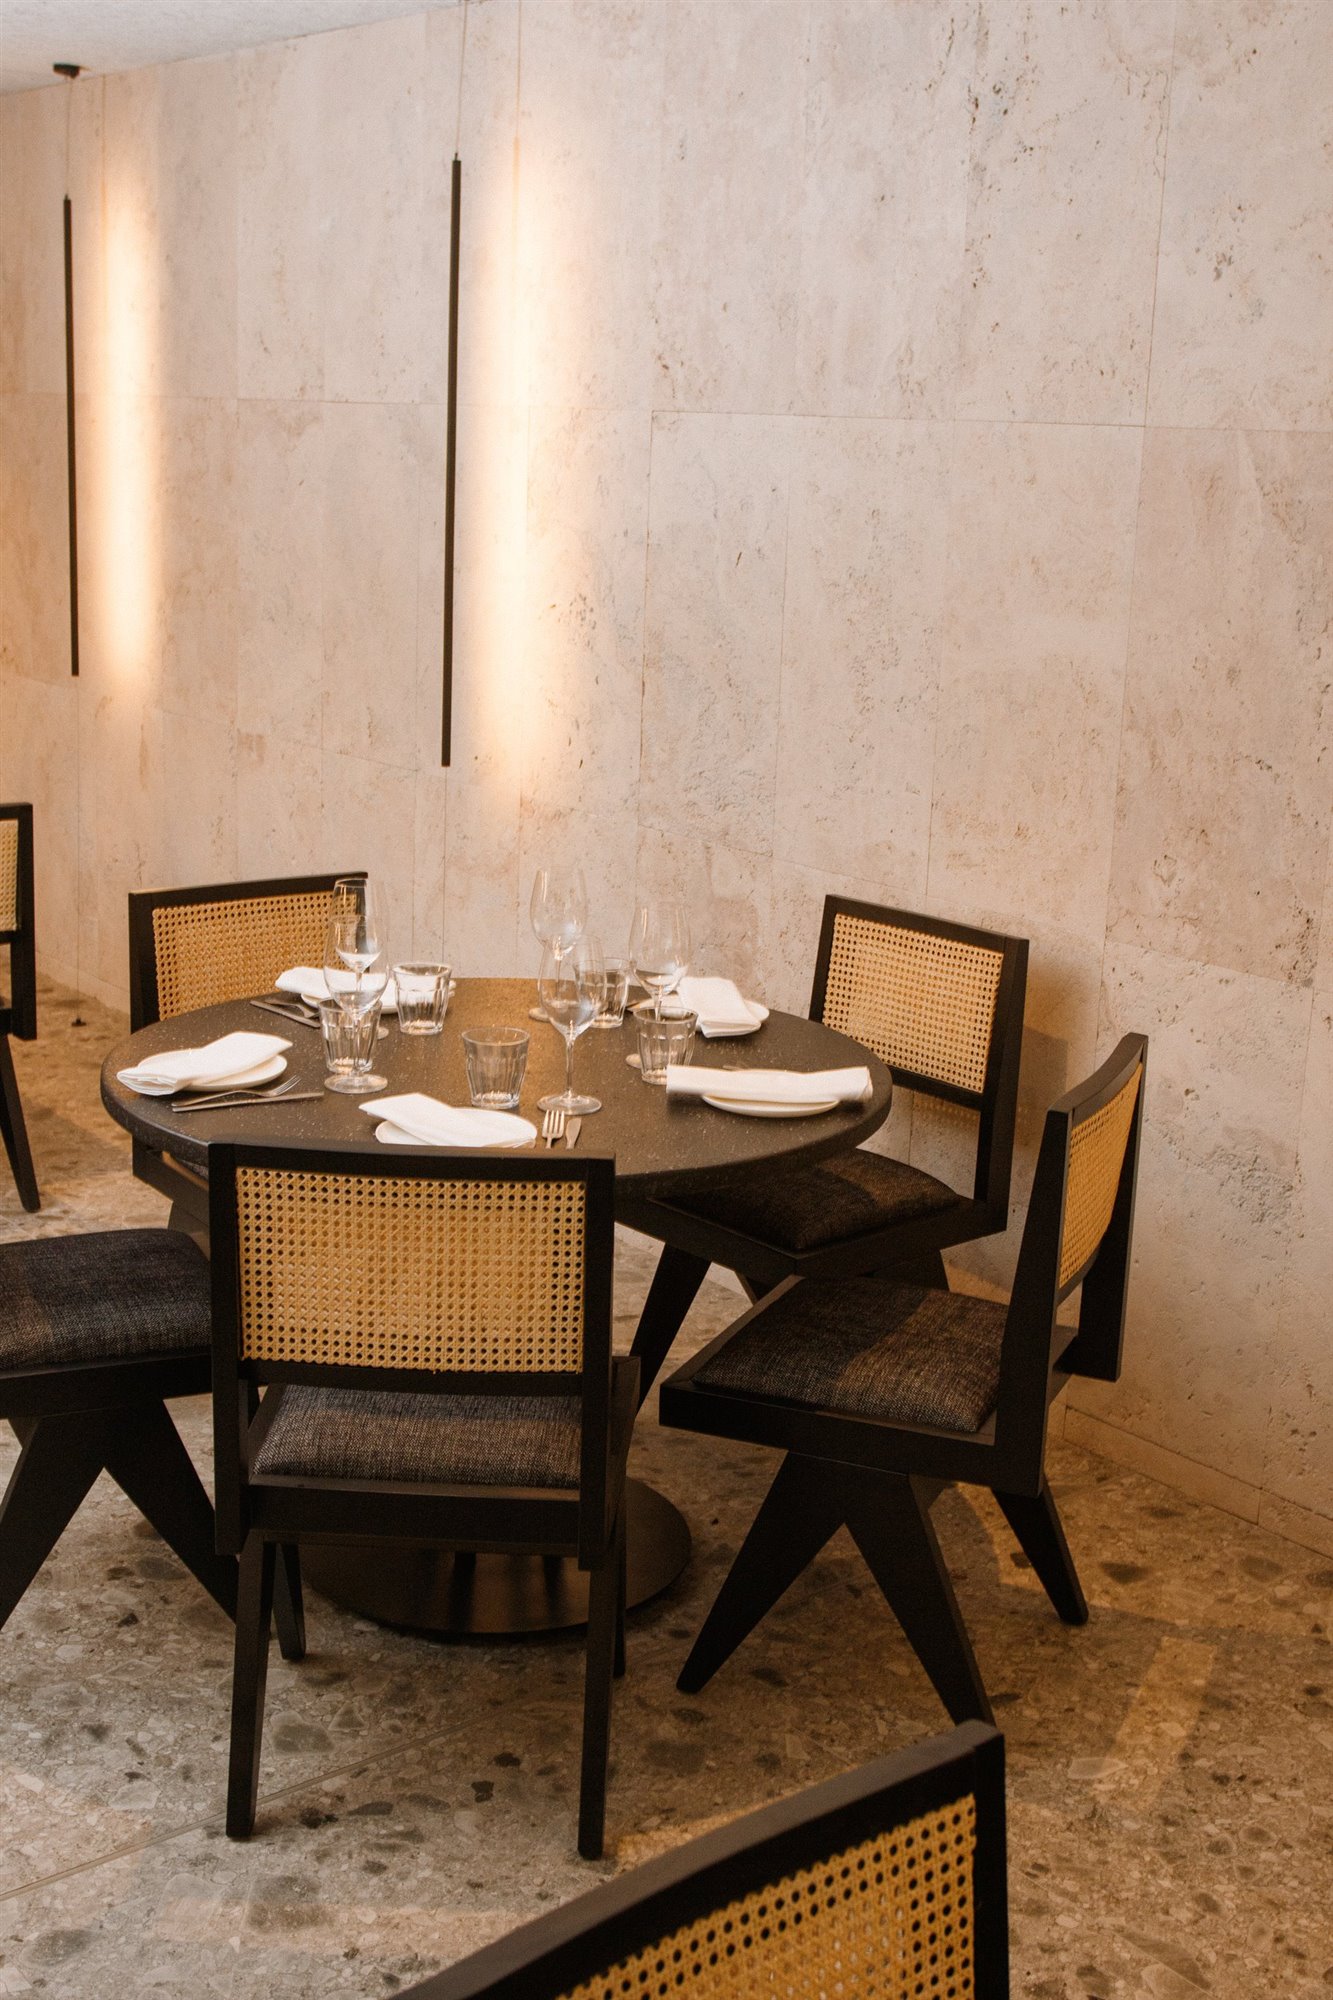 Restaurante Fayer libanes en madrid mesa redonda con sillas de rejilla